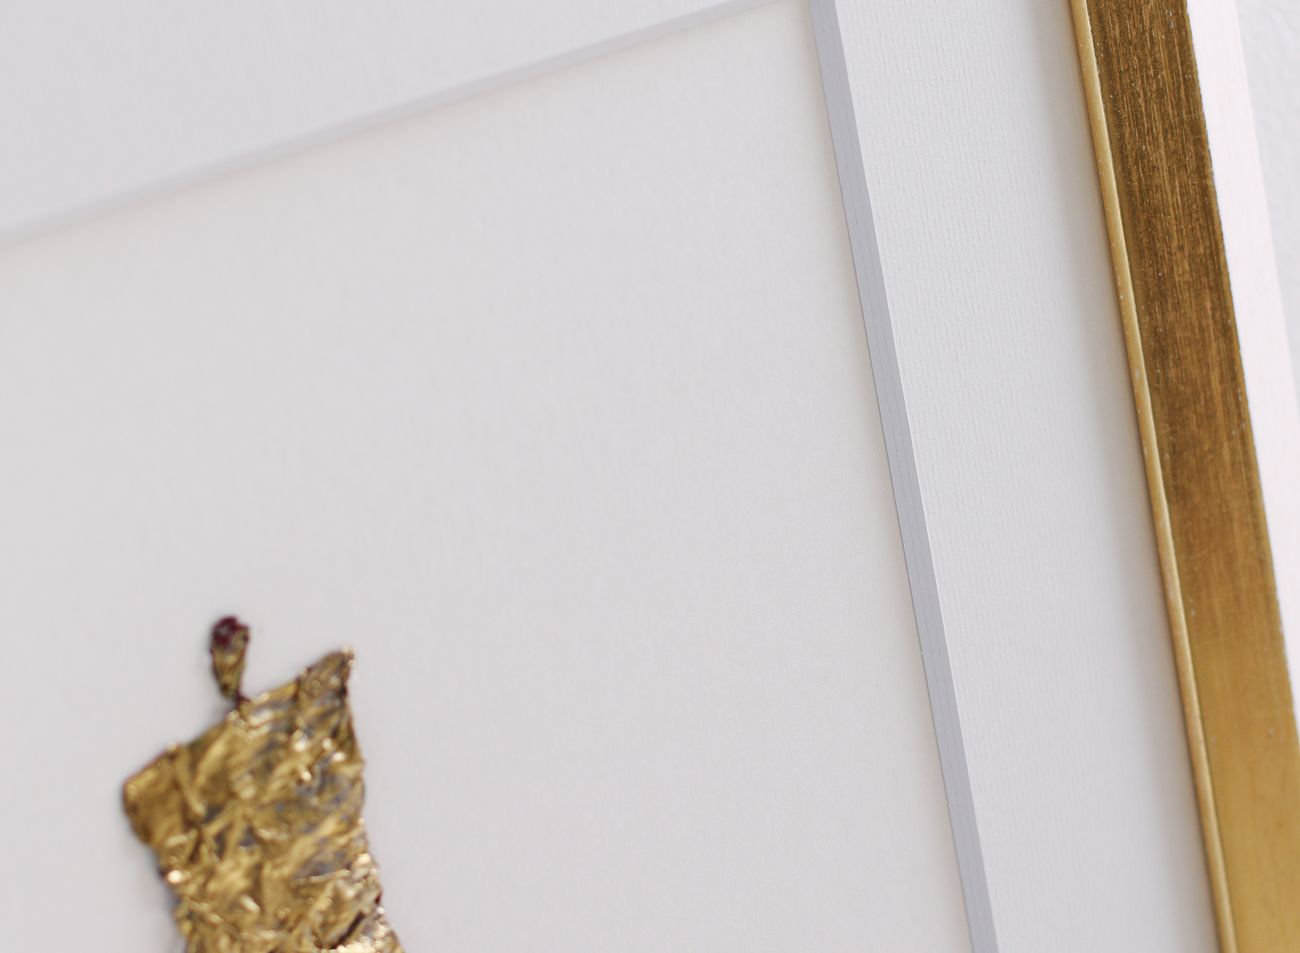 Rámování obrazu Leny LM Aardse s hlubokou paspartou | © Rámařství Frame it